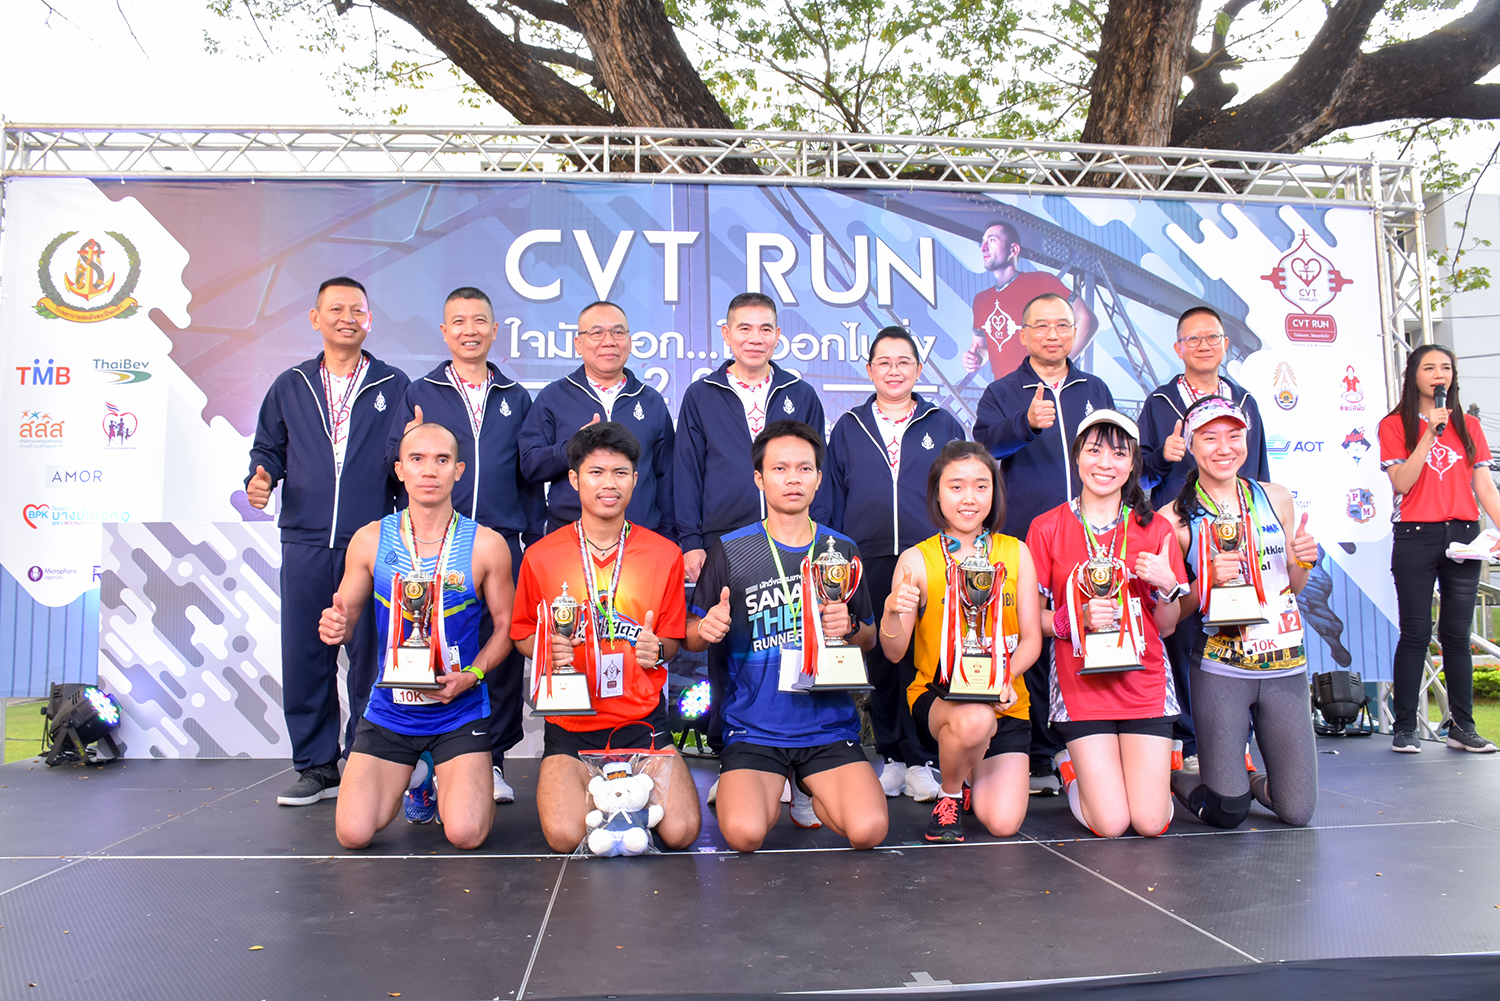 พิธีมอบถ้วยรางวัลเกียรติยศ แก่ผู้ชนะการแข่งขันในกิจกรรม " วิ่งการกุศล CVT Run 2018 ใจมันบอก...ให้ออกไปวิ่ง "